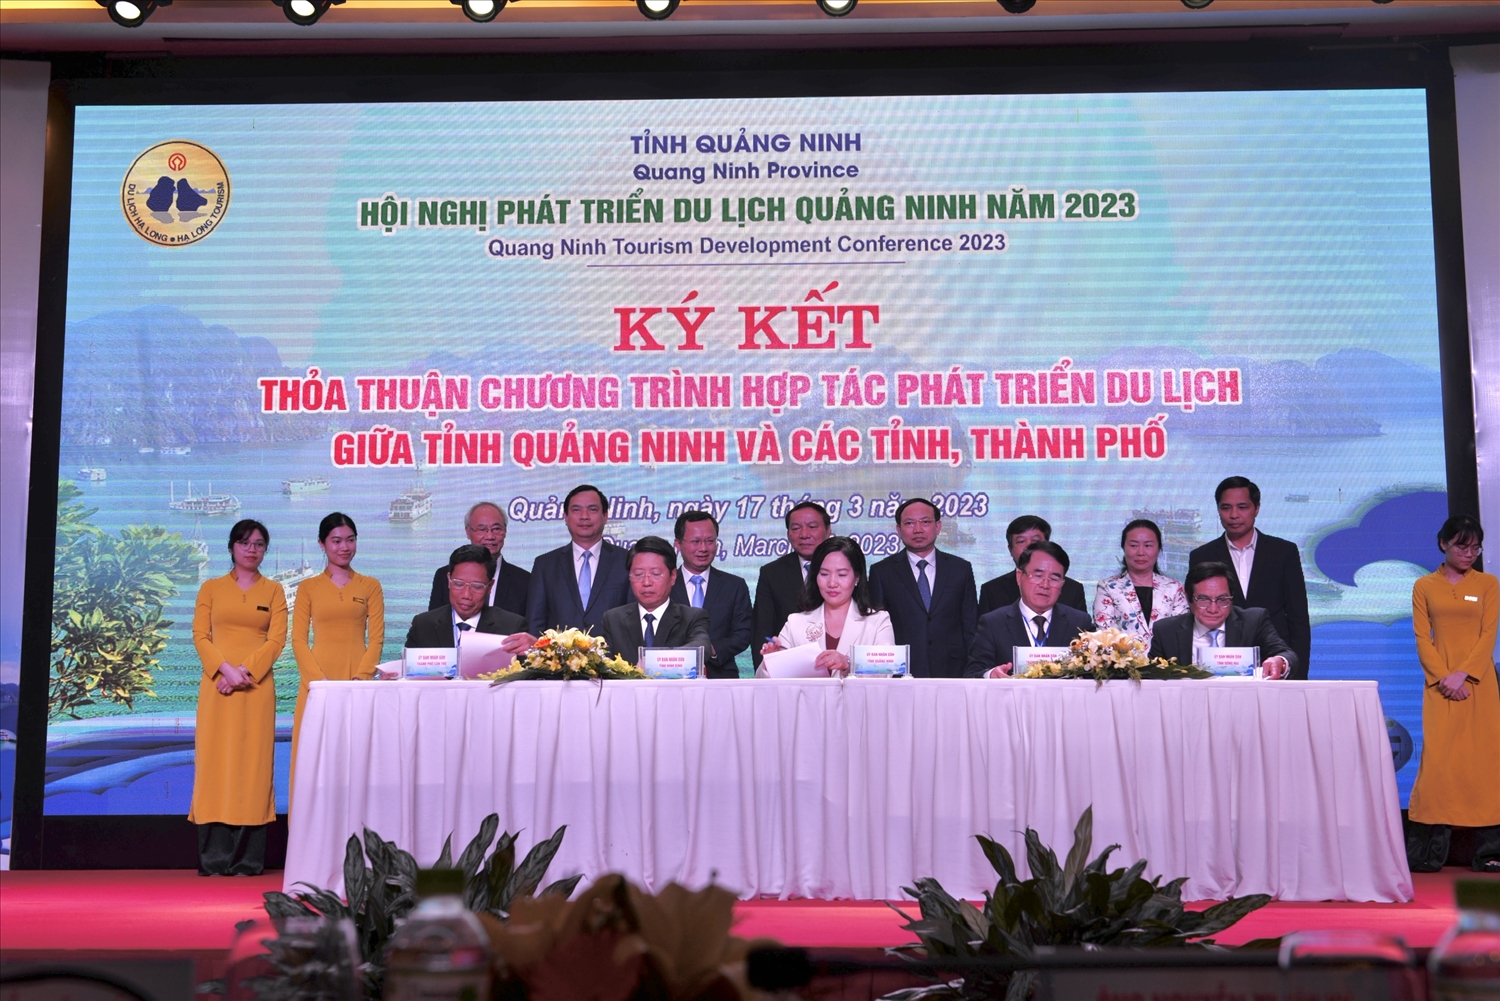 Ký kết thỏa thuận chương trình hợp tác phát triển du lịch giữa tỉnh Quảng Ninh và các tỉnh, thành phố